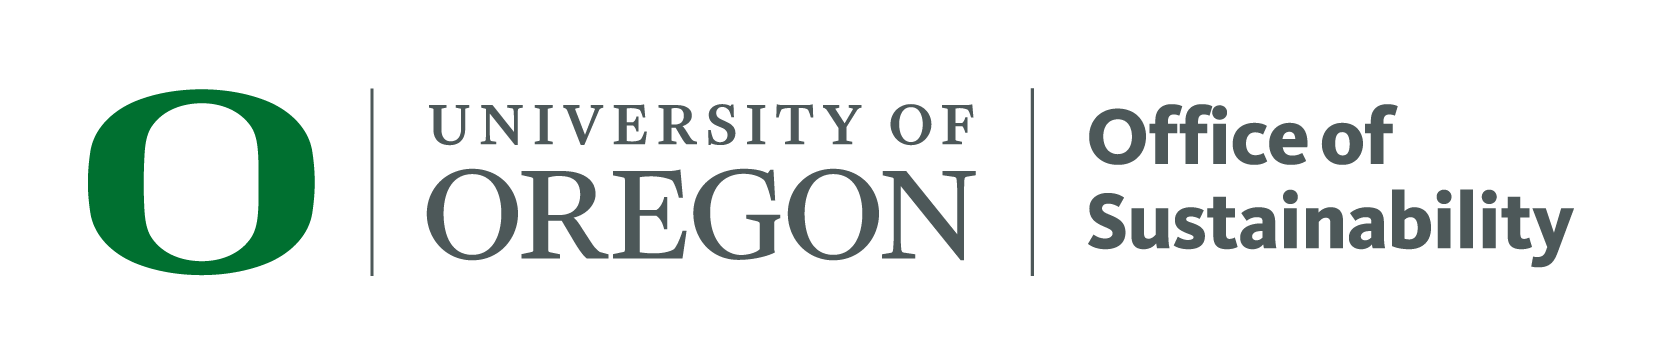 University of Oregon Sustainability Office Logo